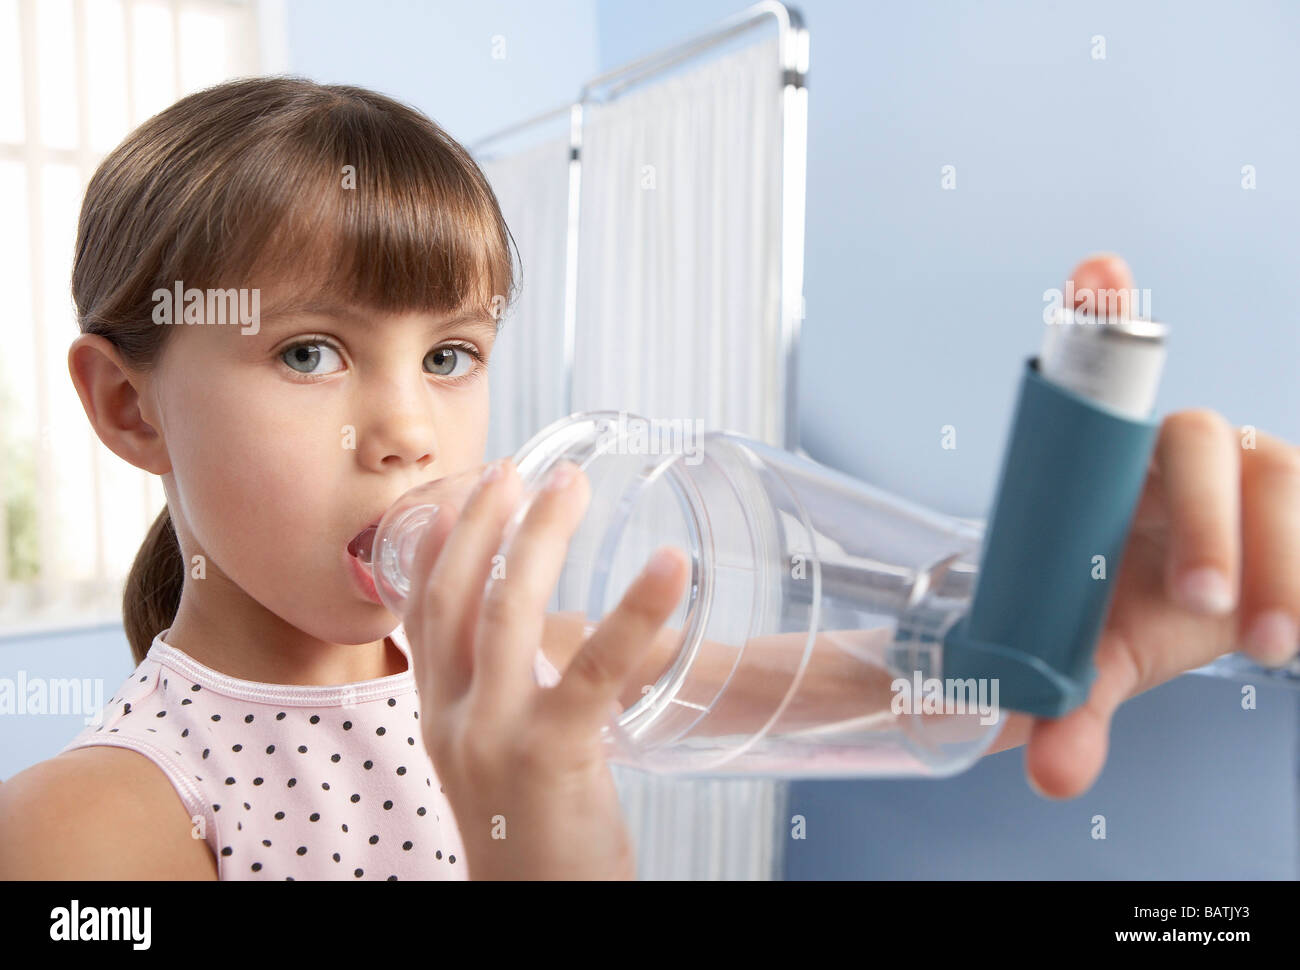 L'entretoise de l'asthme. Jeune fille à l'aide d'une entretoise en plastique (chambre) avec un inhalateur, pour traiter son asthme. Banque D'Images